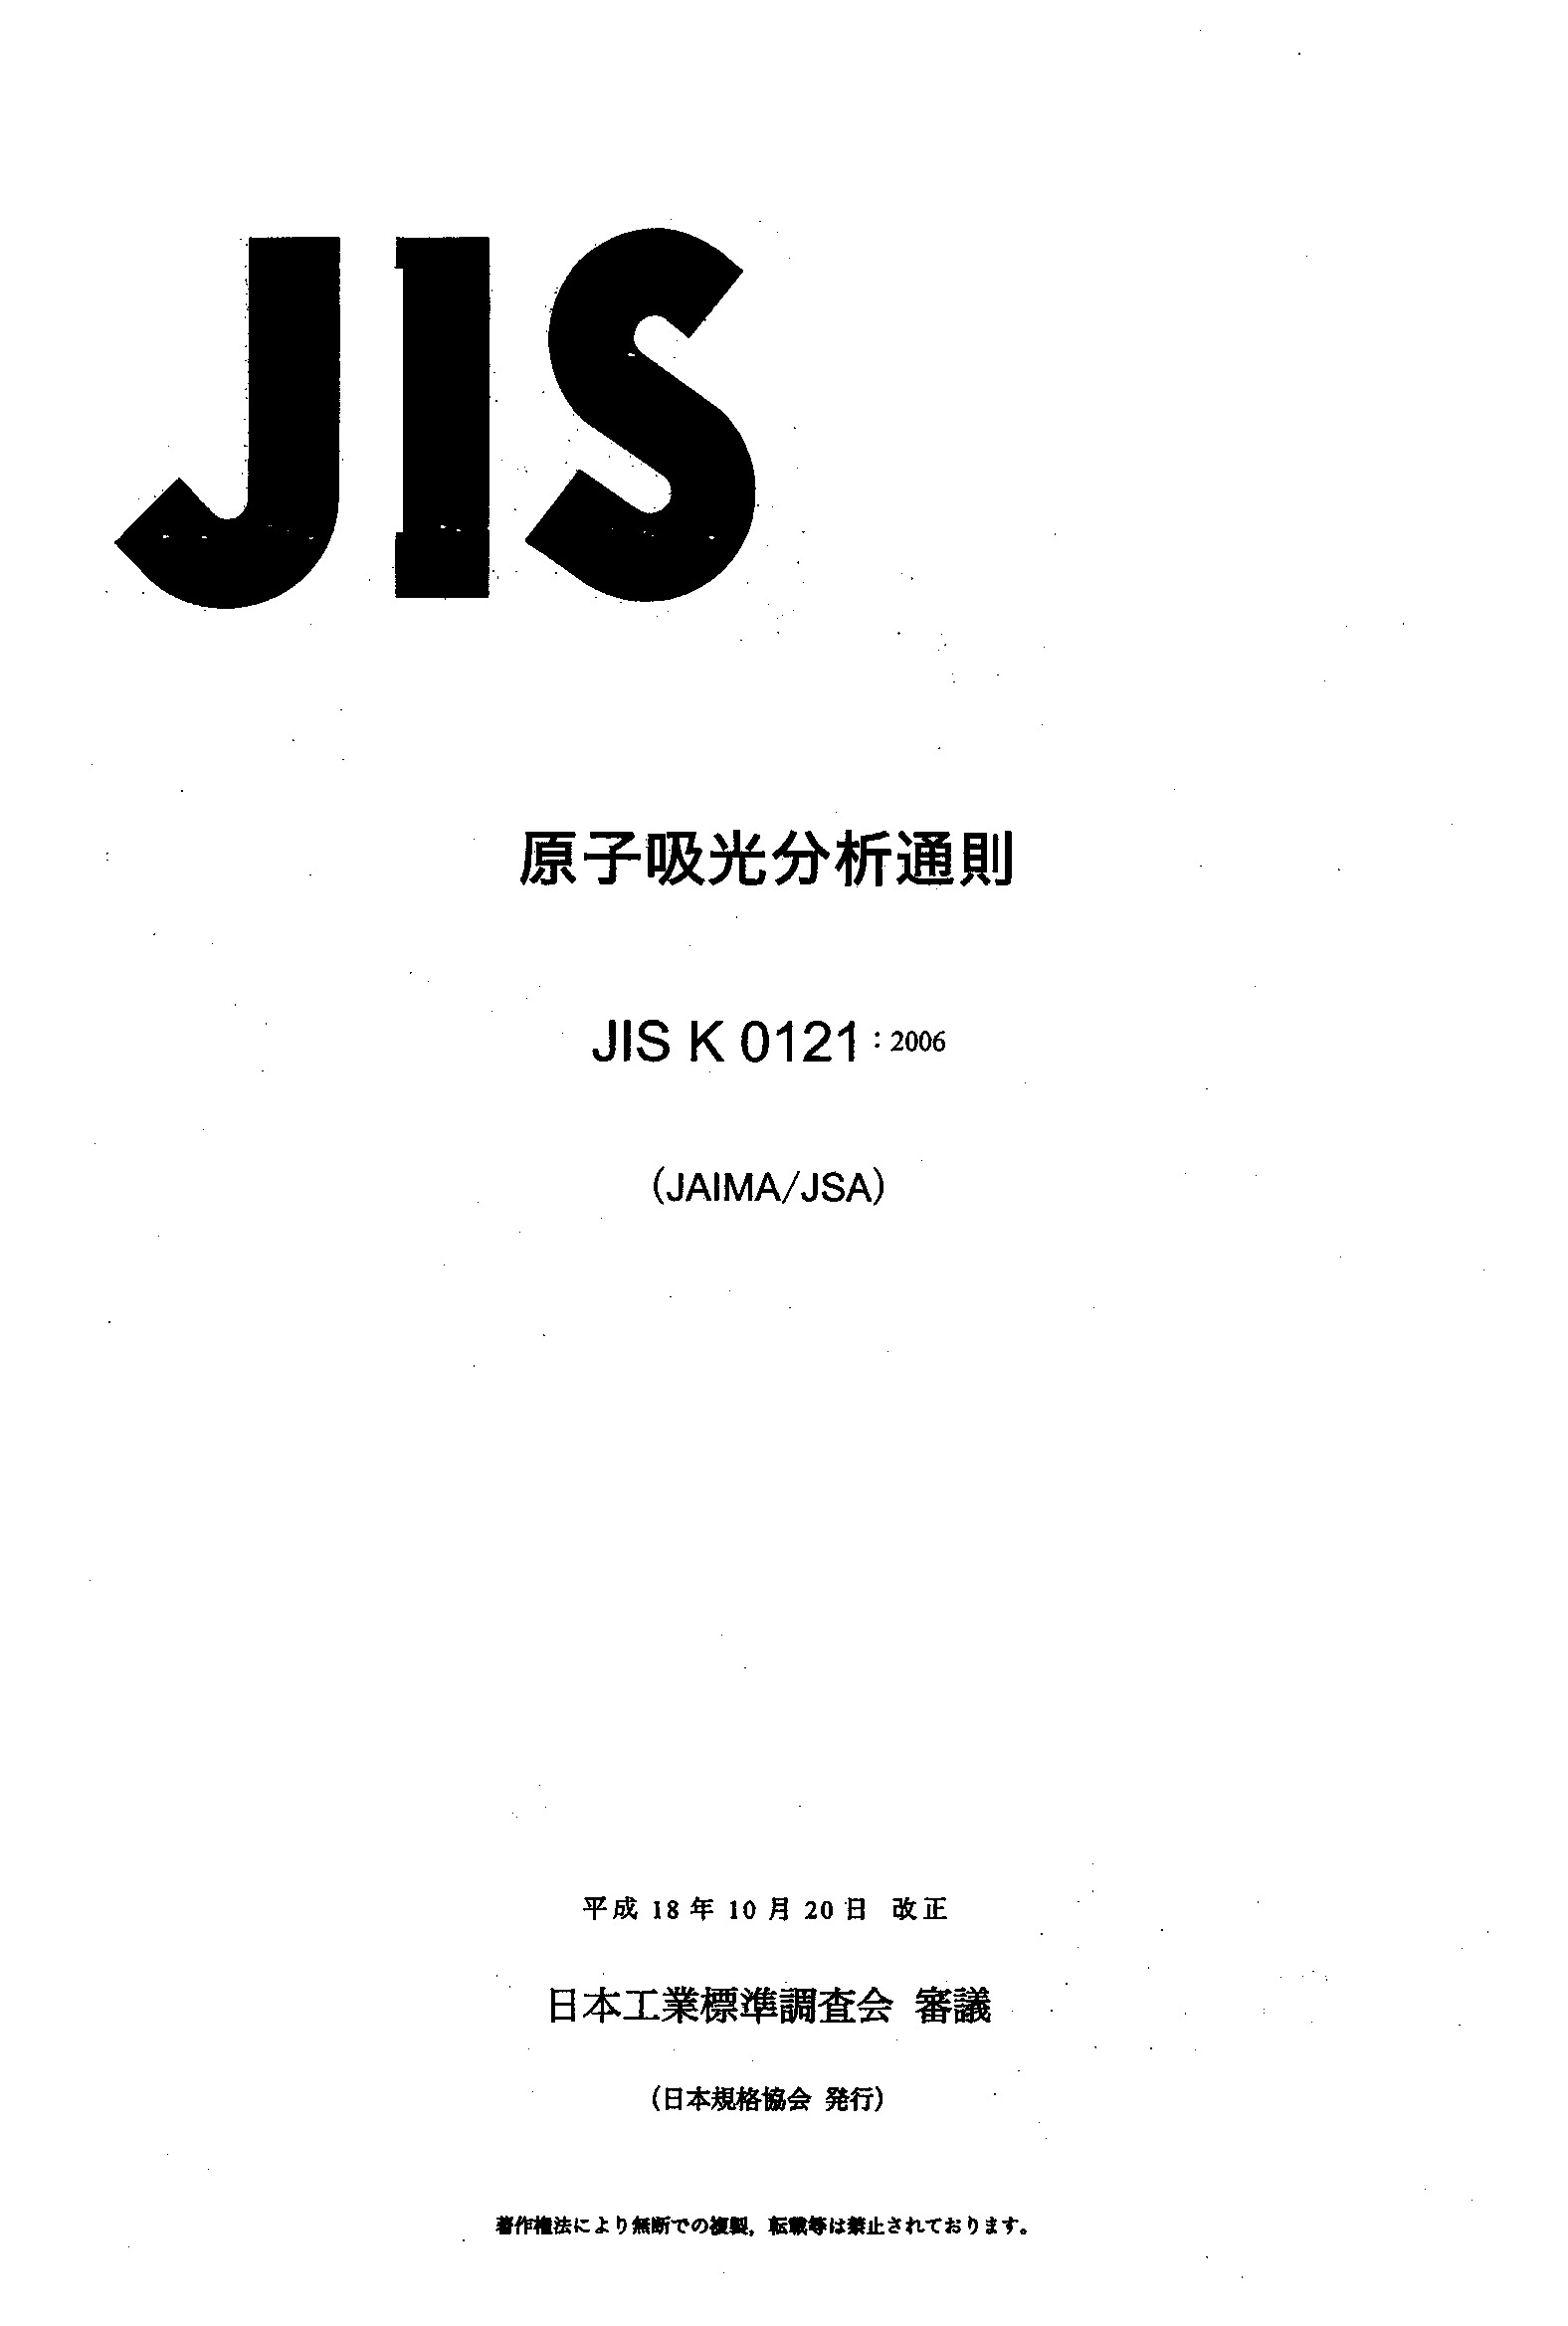 JIS K 0121:2006封面图